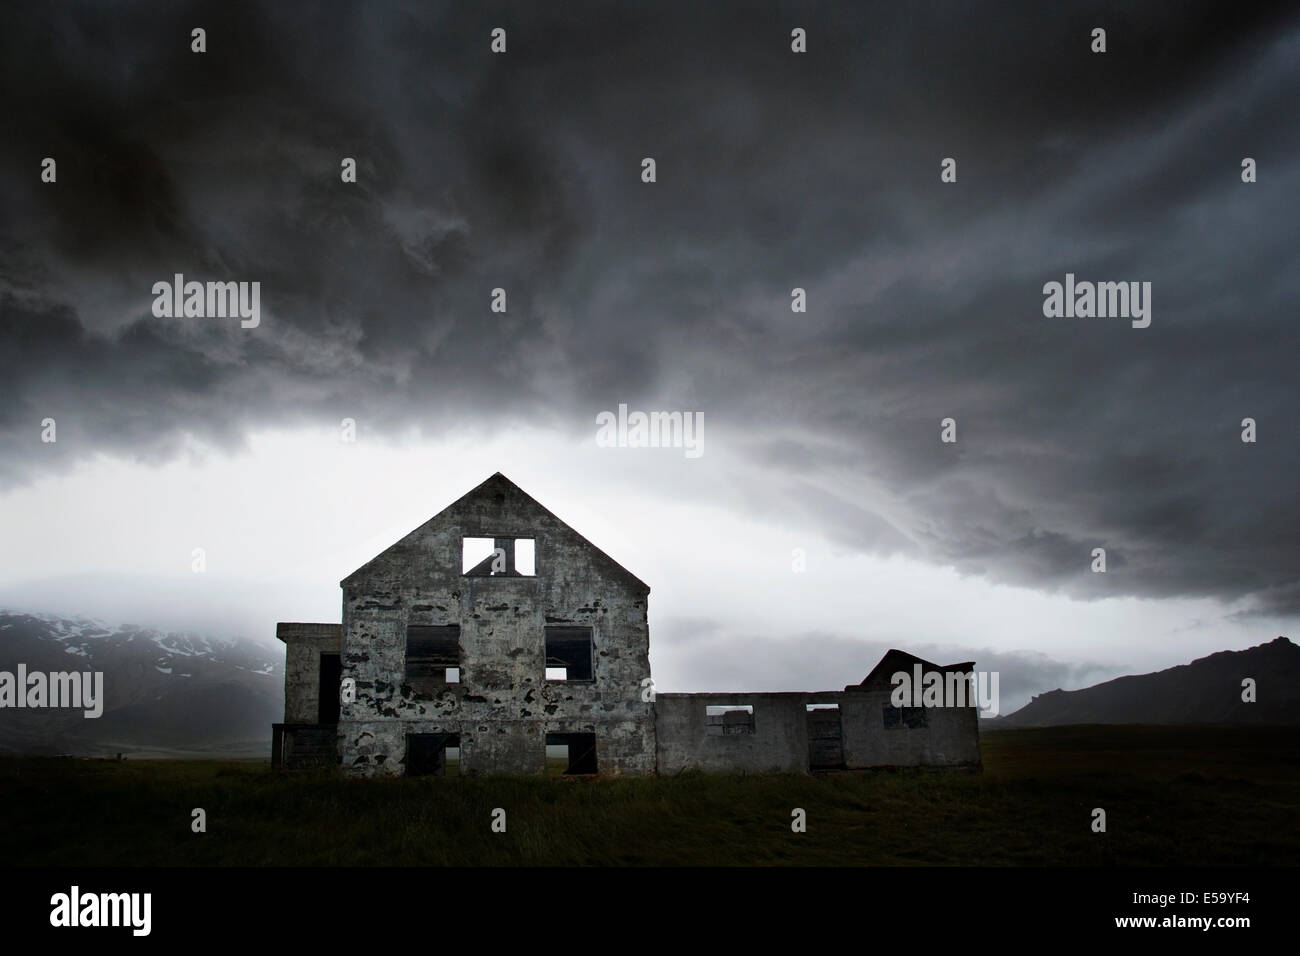 Abandoned House under stormy skies - Dagverdara, Snaefellsnes Peninsula - West Iceland Stock Photo